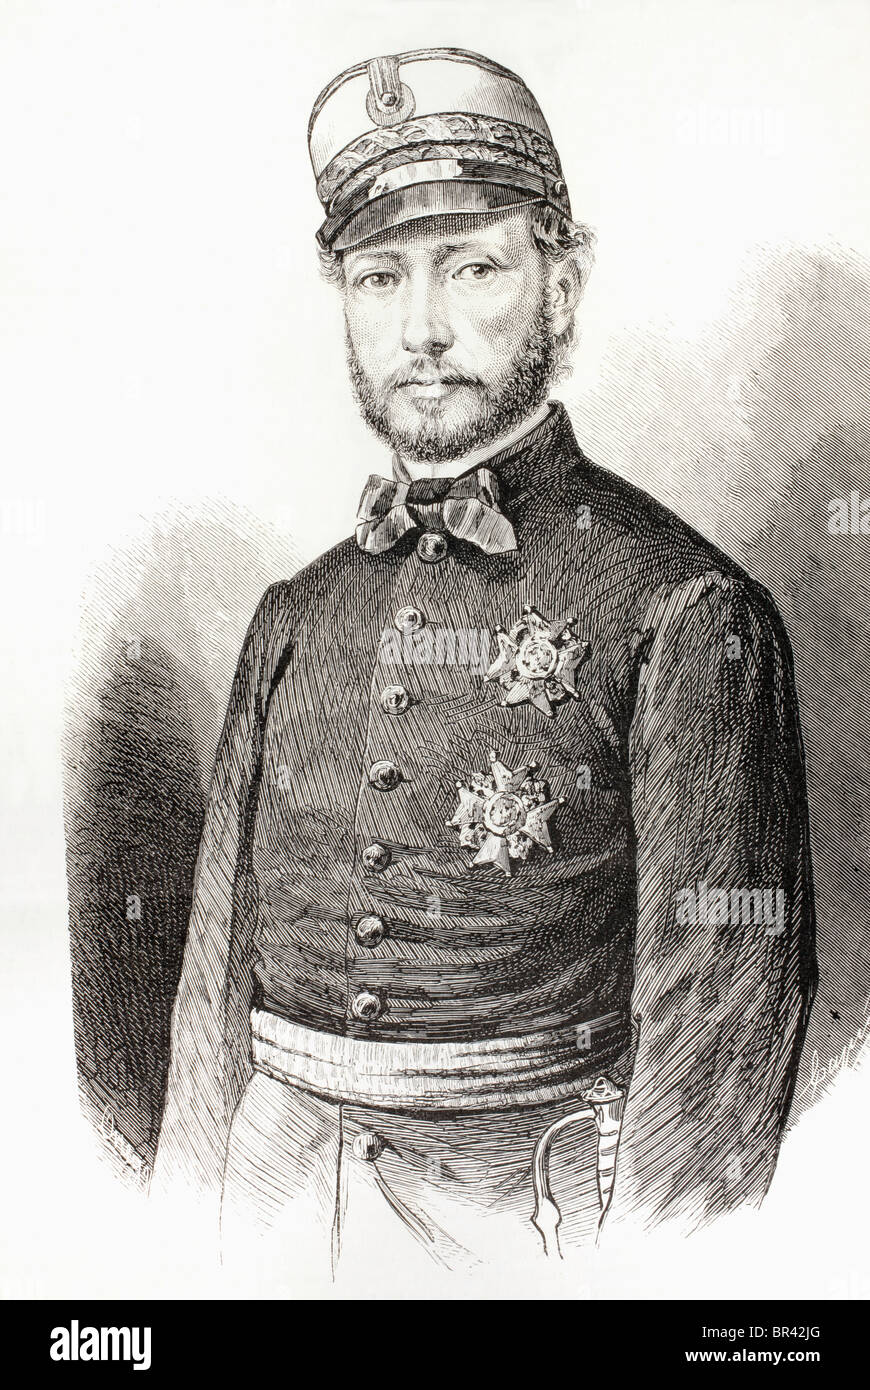 Don Juan Prim y Prats, Marquis von Los Castillejos, Grande von Spanien, Graf von Reus, Vicomte von Bruch, 1814-1870. Stockfoto